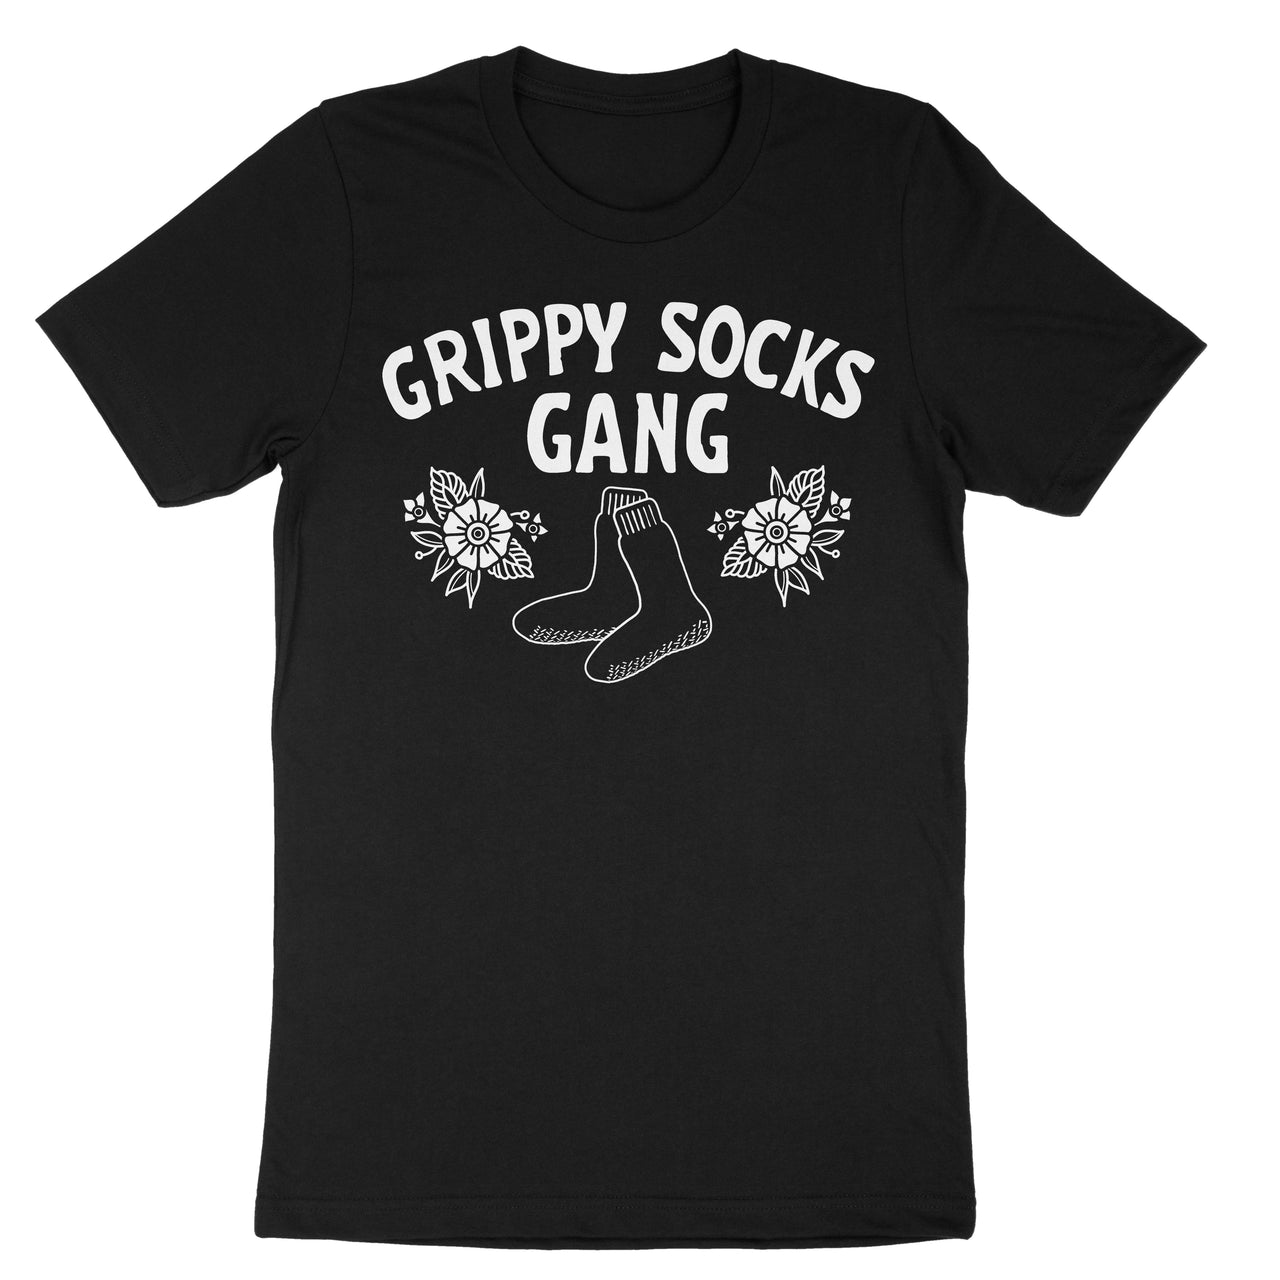 Grippy Socks Gang Tee